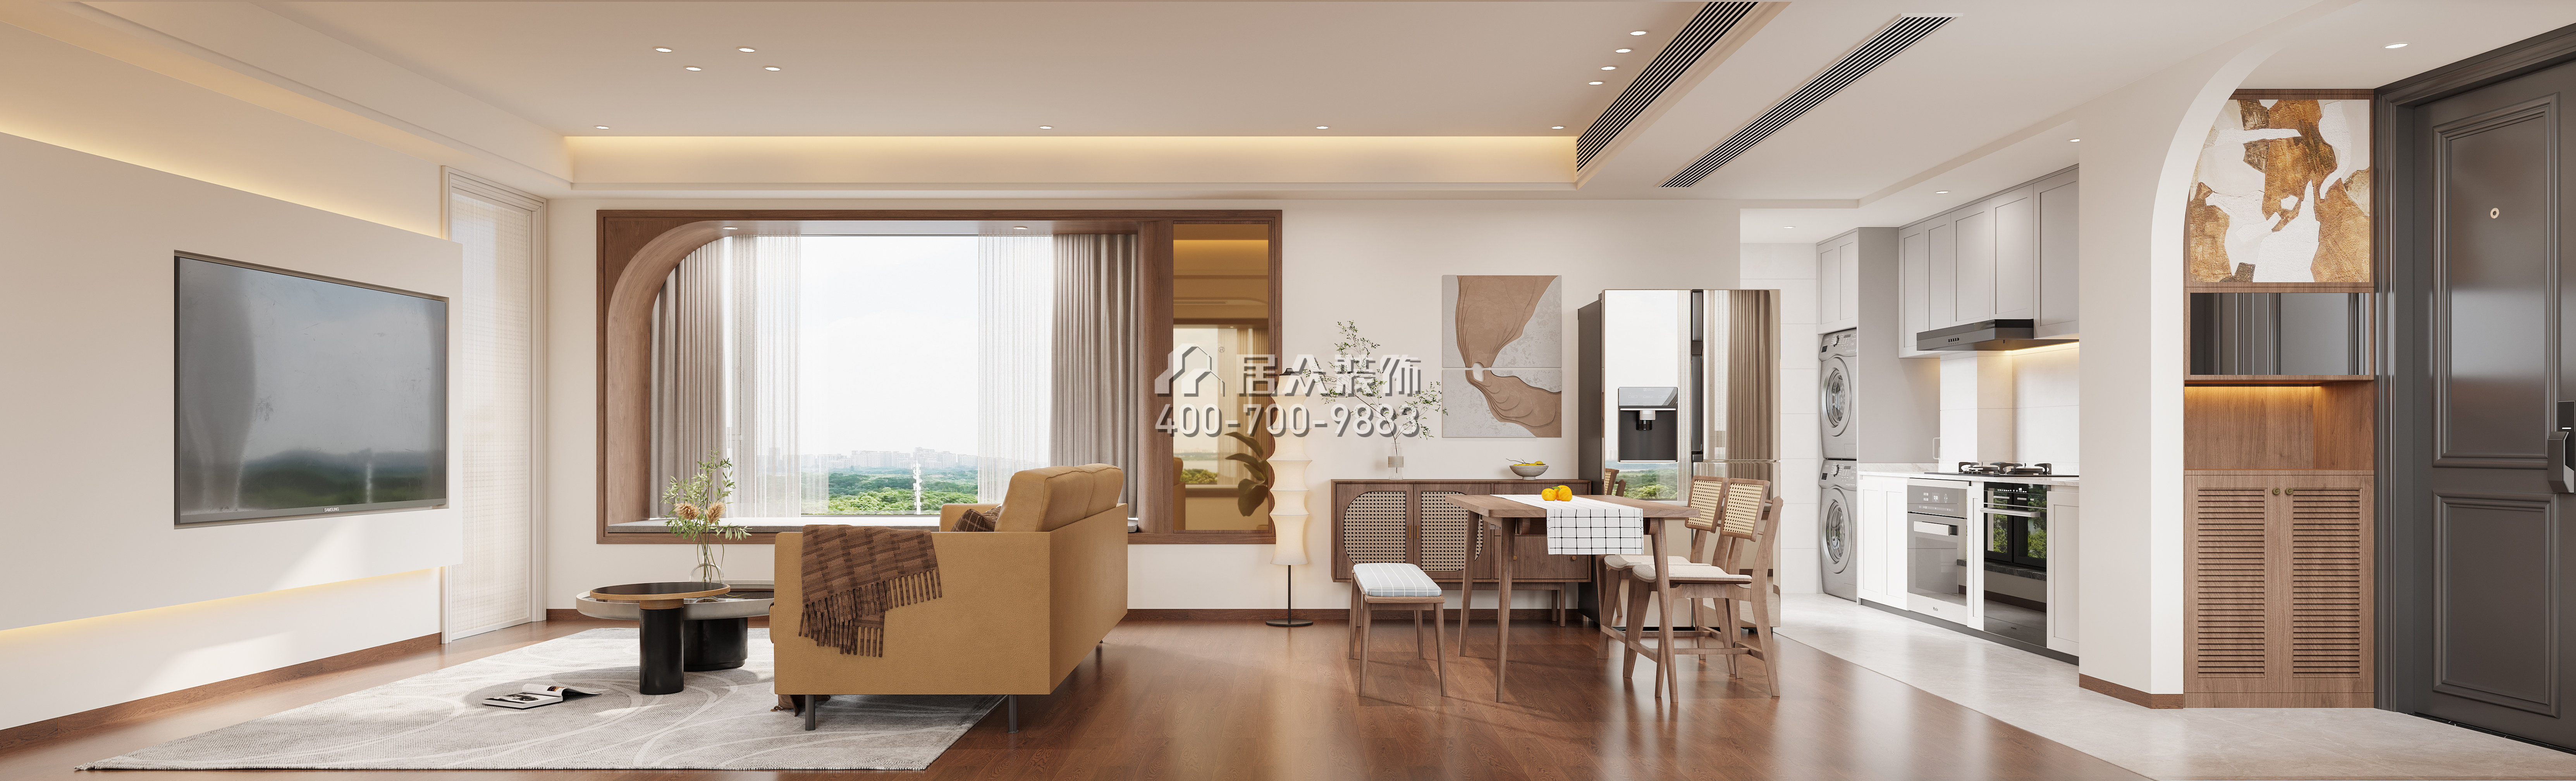 新天鹅堡三期122平方米混搭风格平层户型客厅装修效果图